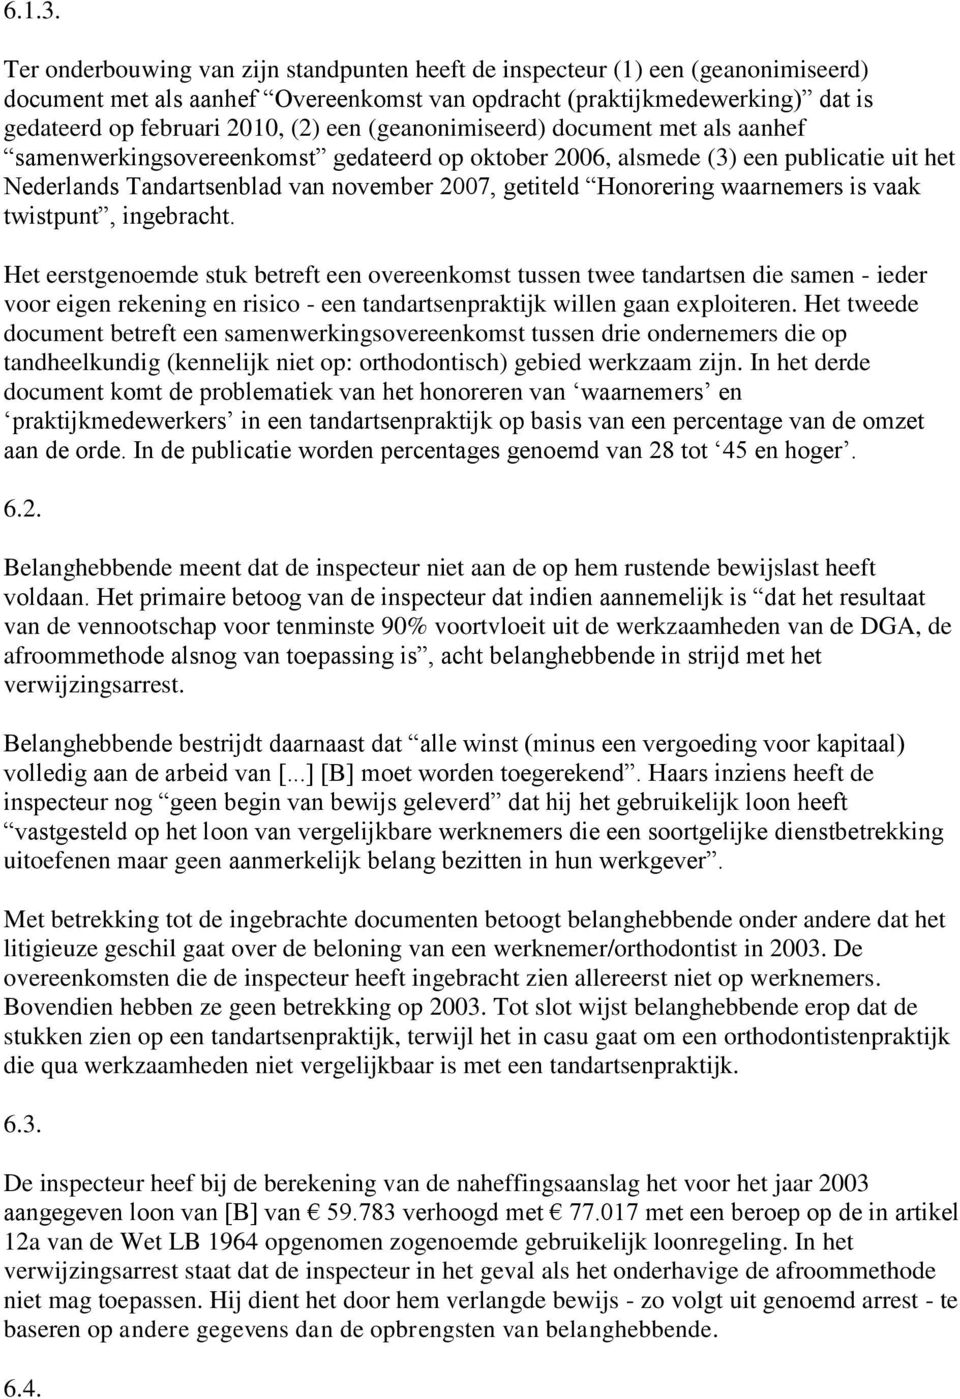 (geanonimiseerd) document met als aanhef samenwerkingsovereenkomst gedateerd op oktober 2006, alsmede (3) een publicatie uit het Nederlands Tandartsenblad van november 2007, getiteld Honorering